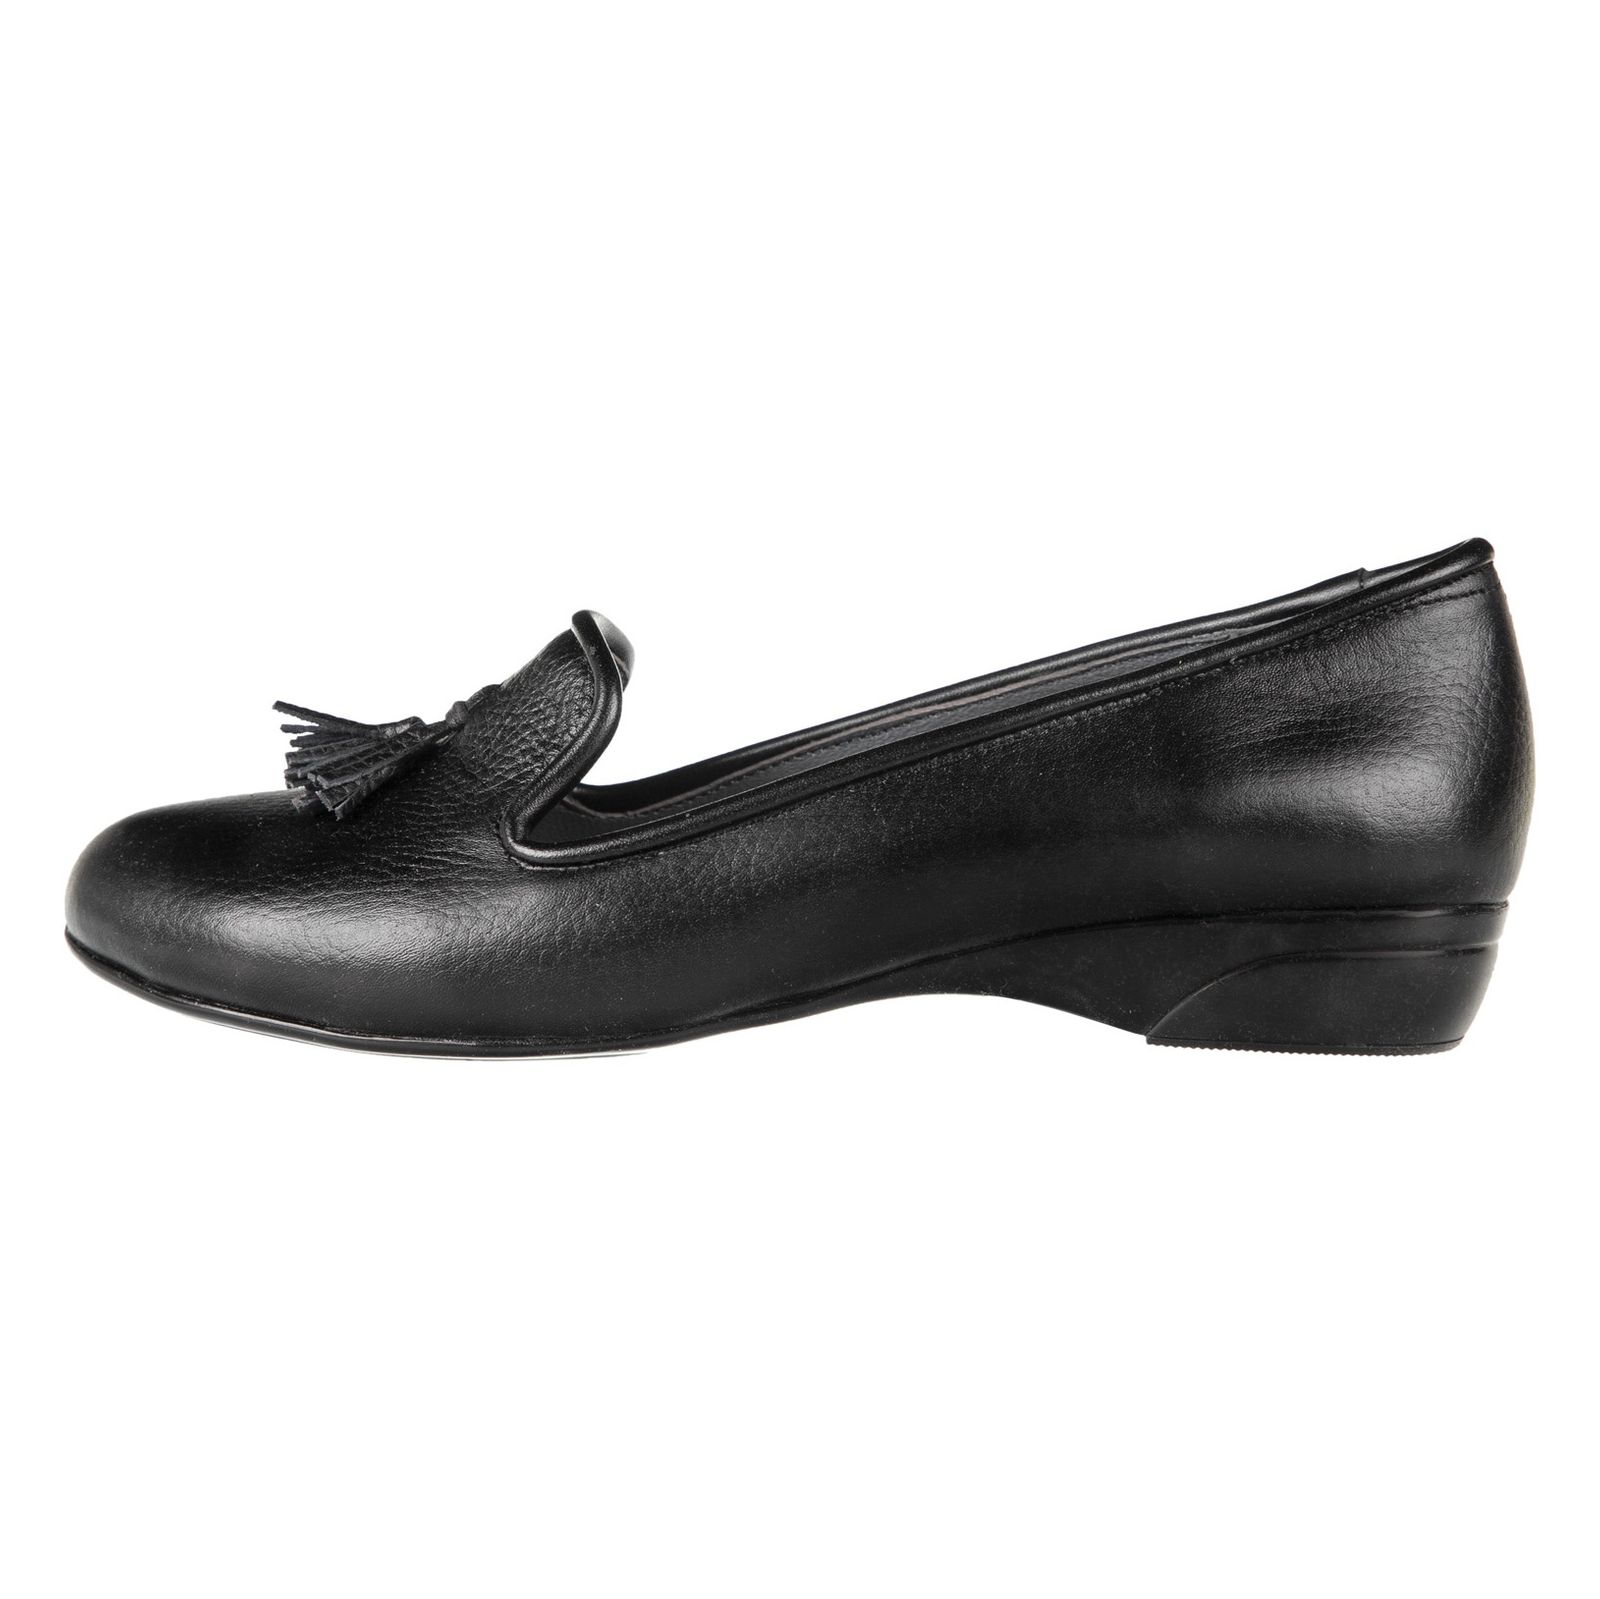 کفش زنانه دلفارد مدل 5183A500-101 - مشکی - 3